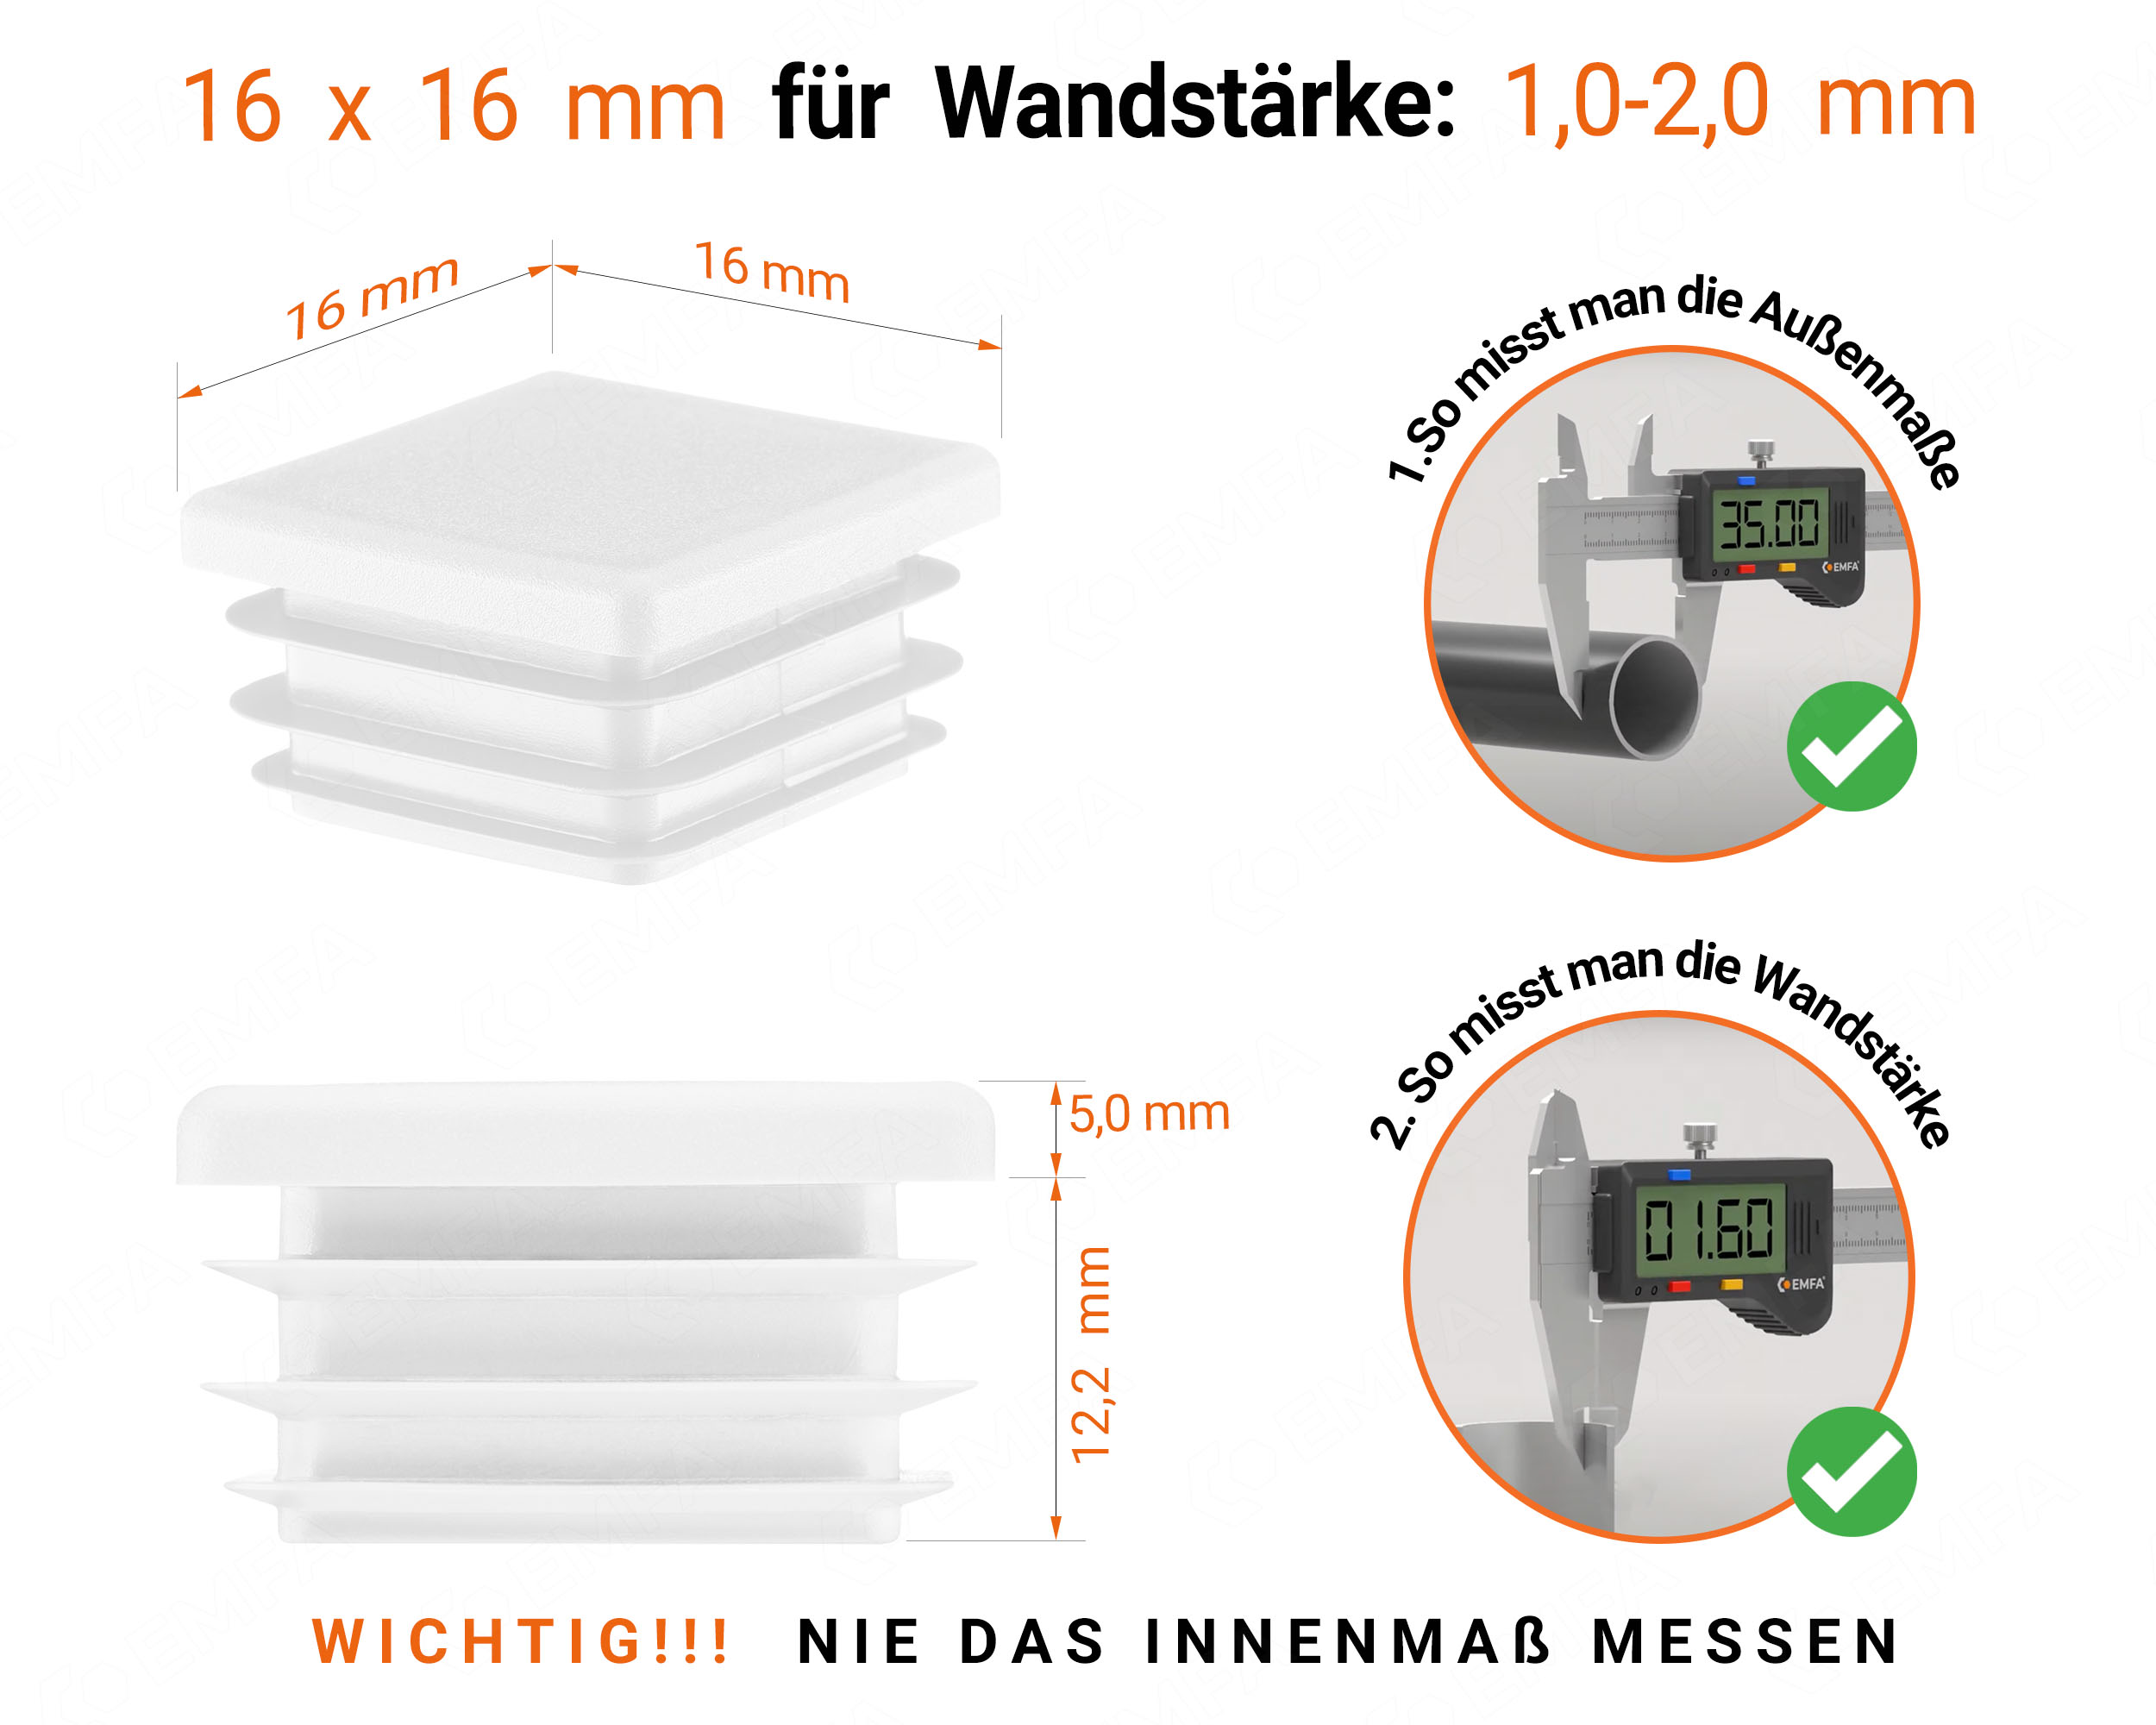 Weiße Endkappe für Vierkantrohre in der Größe 16x16 mm mit technischen Abmessungen und Anleitung für korrekte Messung